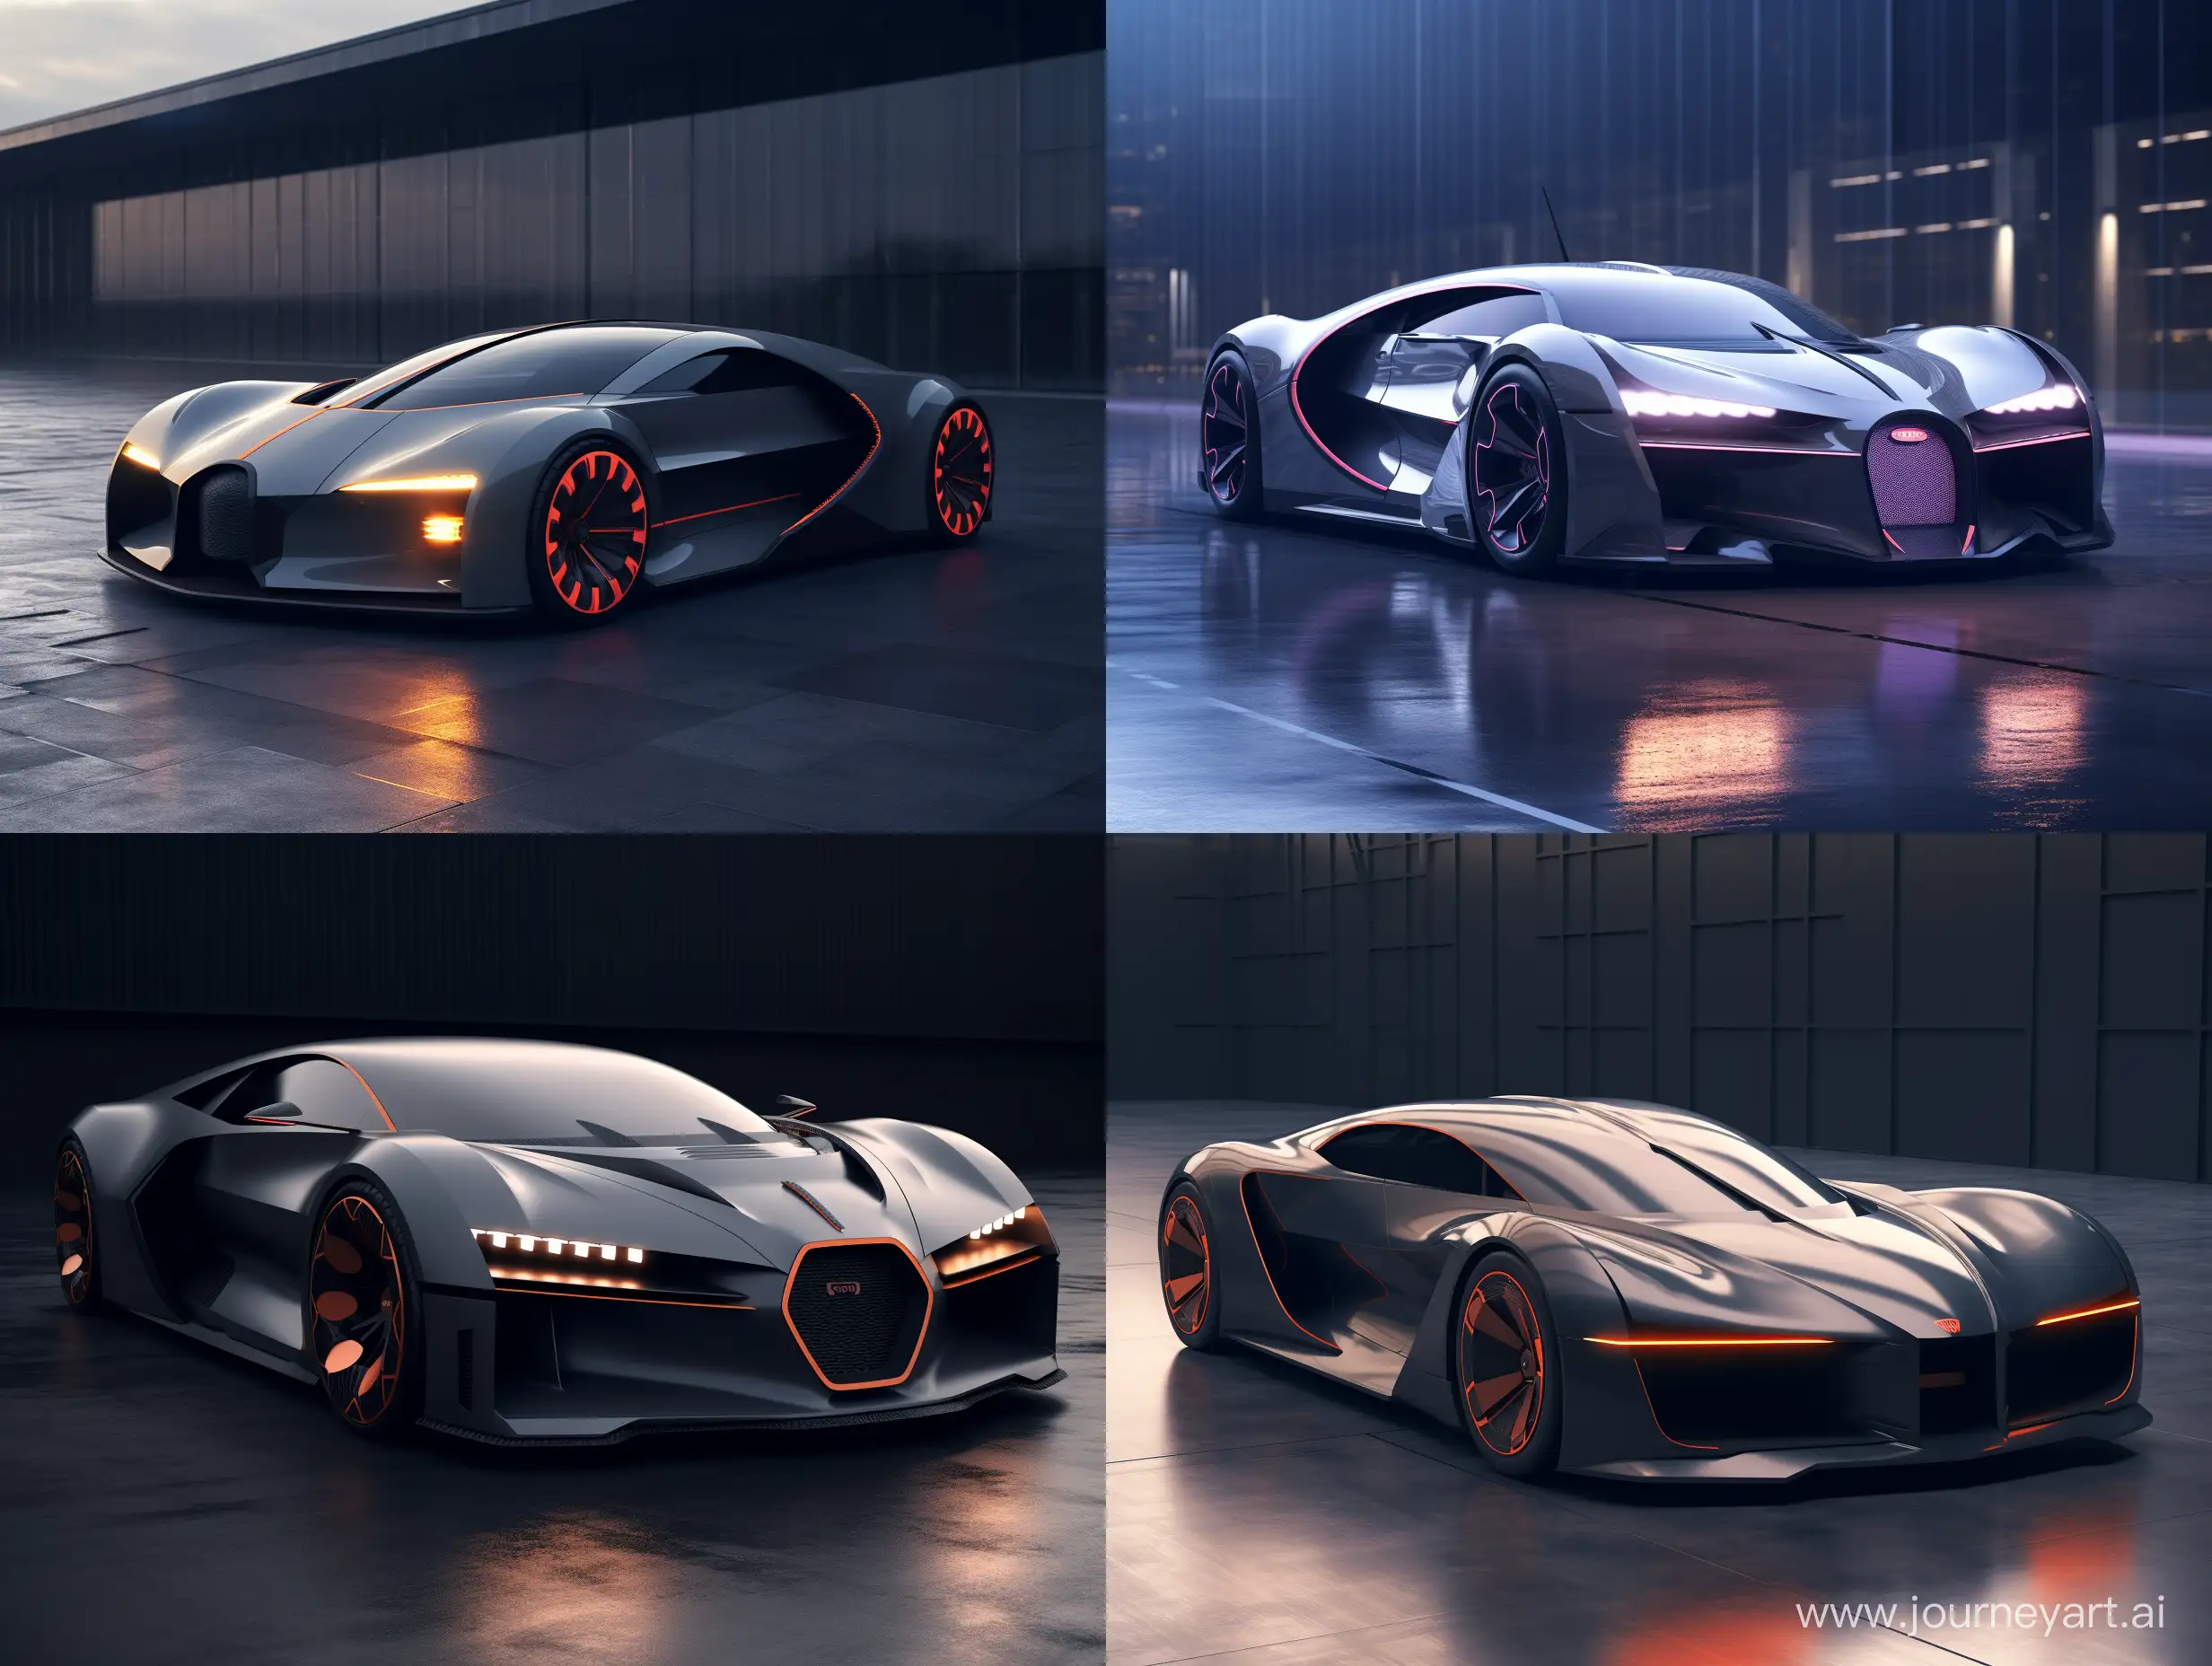 Futuristic-Bugatti-Concept-Extreme-8K-Refined-Sport-Car-Design